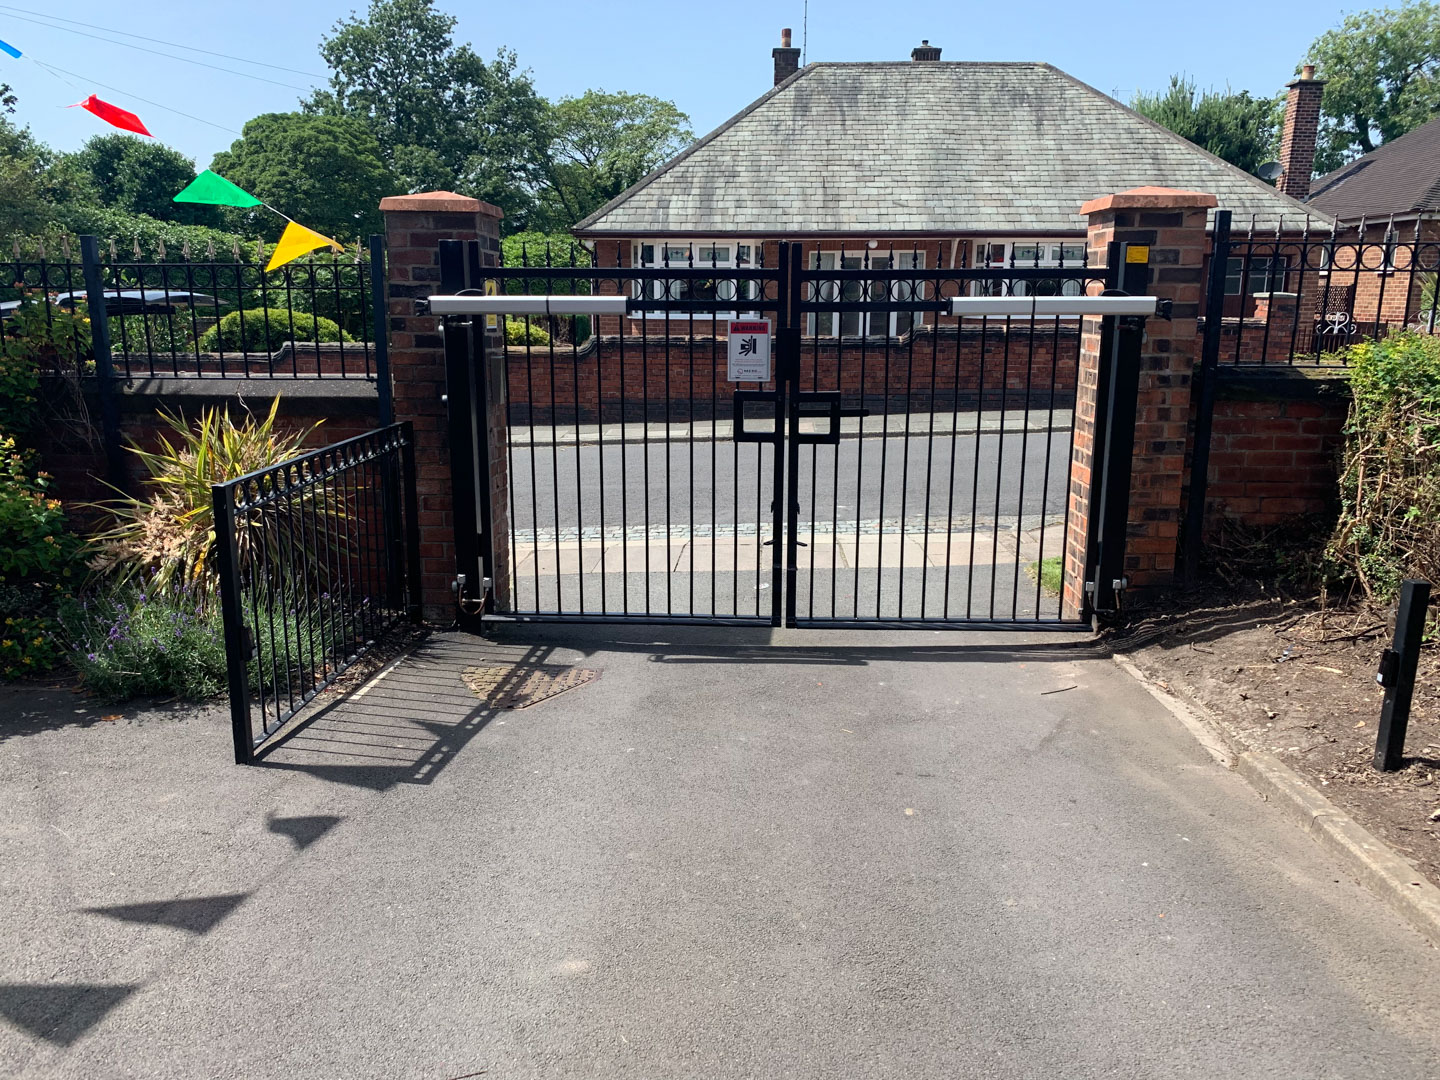 Abbeyford Children’s Home Gate Service (June 19)